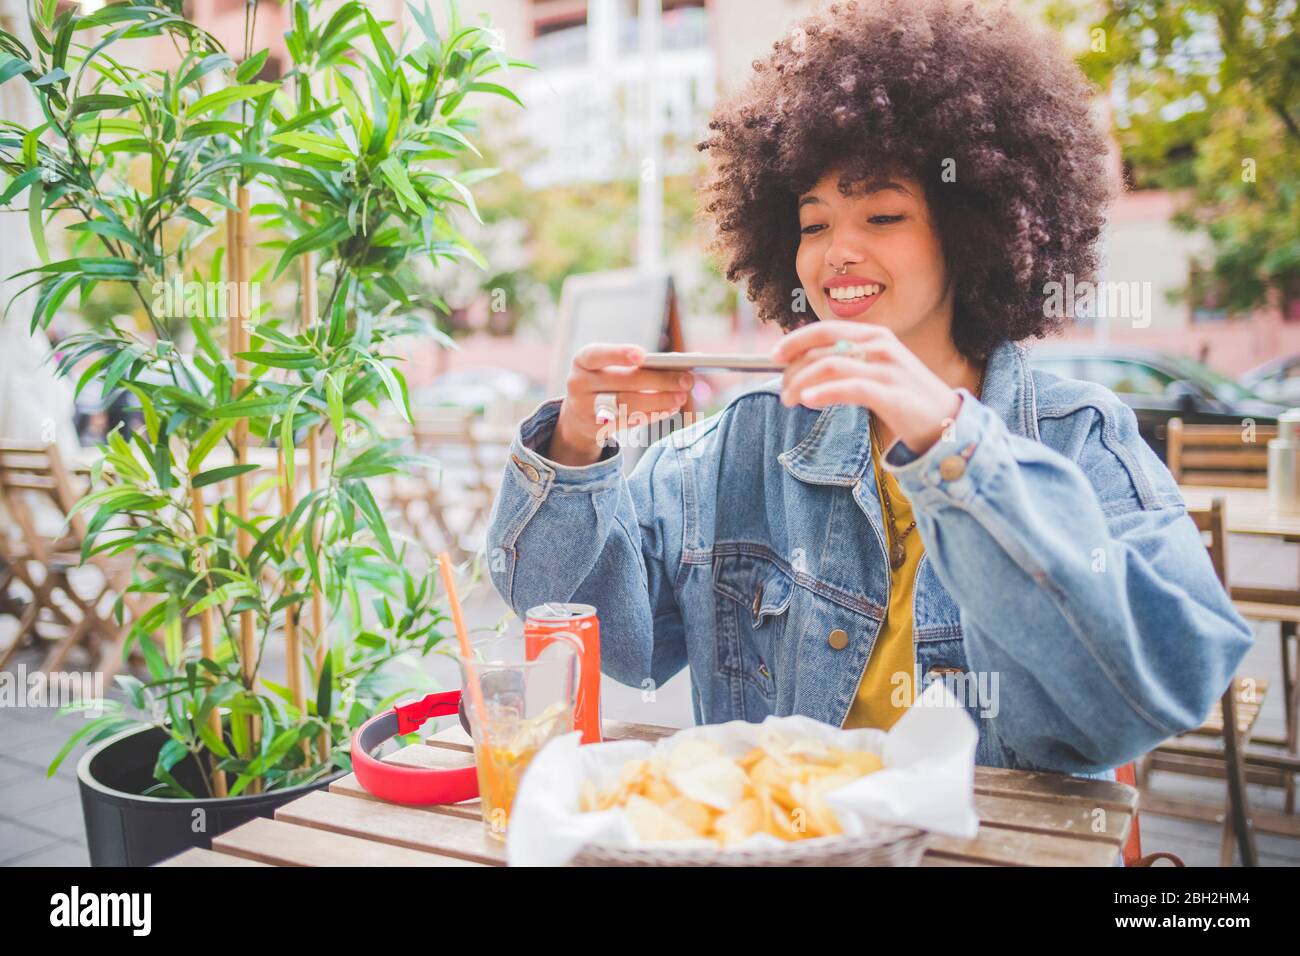 Lächelnde junge Frau mit Afro-Frisur, die Smartphone-Fotos in einem Café im Freien in der Stadt macht Stockfoto